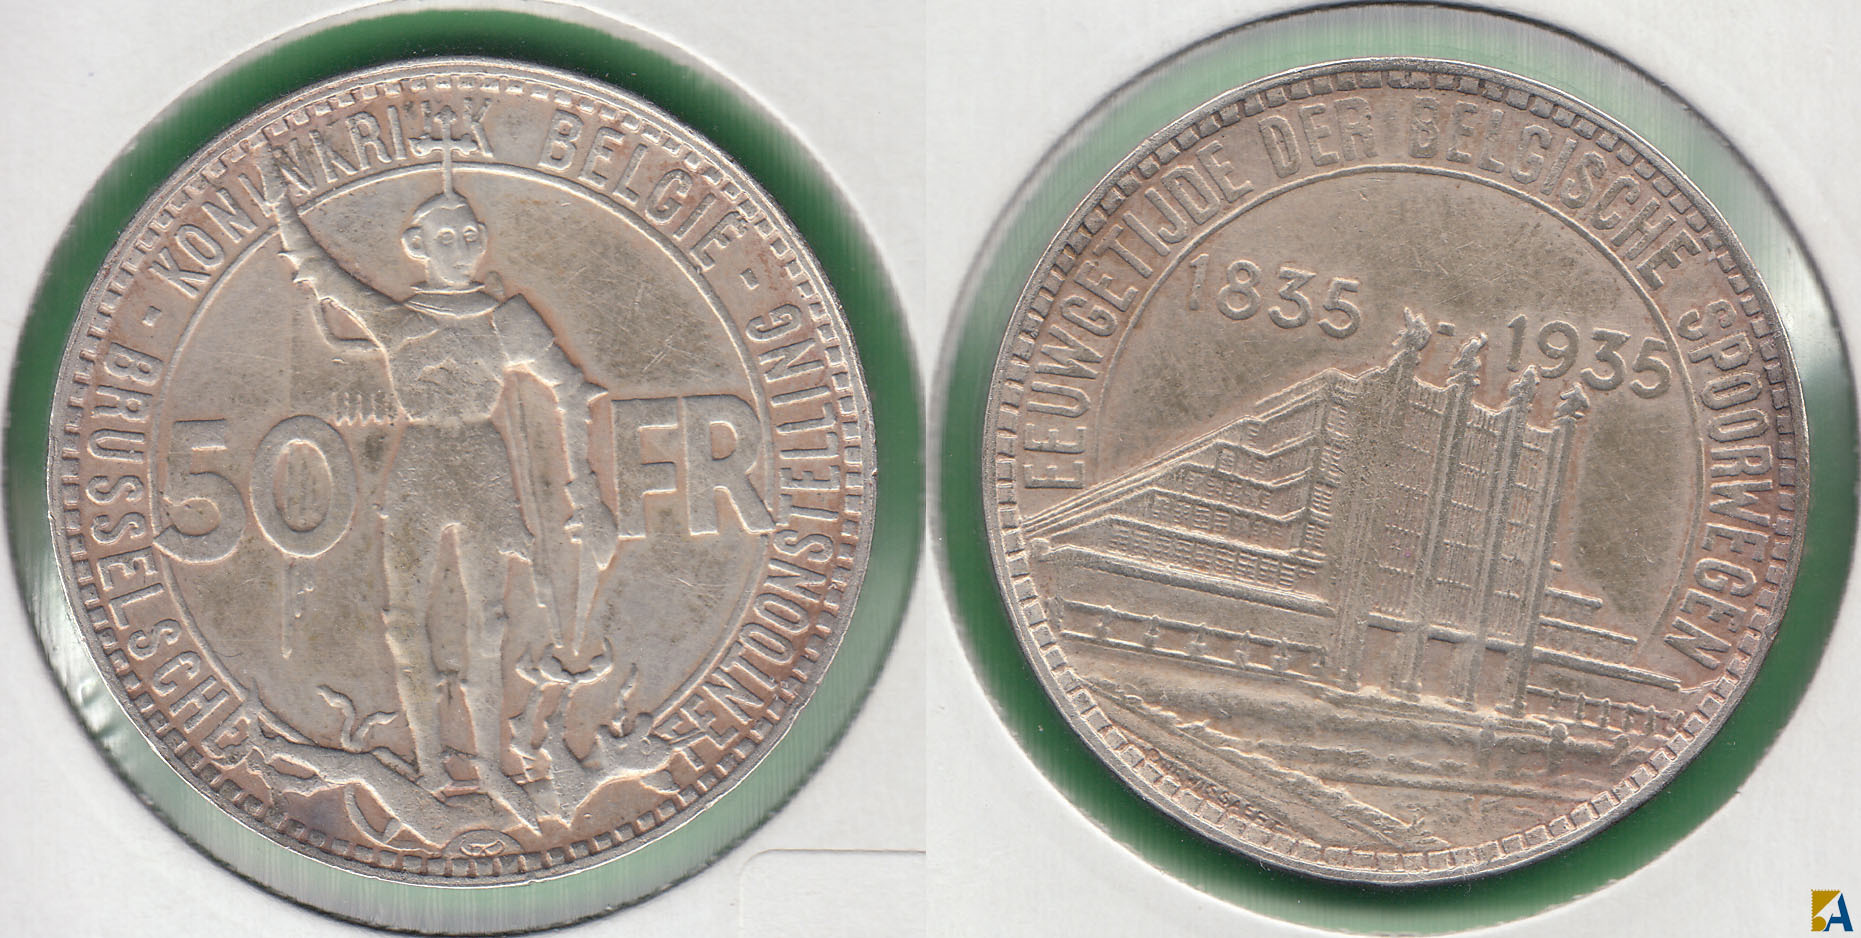 BELGICA - BELGIUM. 50 FRANCOS (FRANCS) DE 1935. PLATA 0.680. (2)